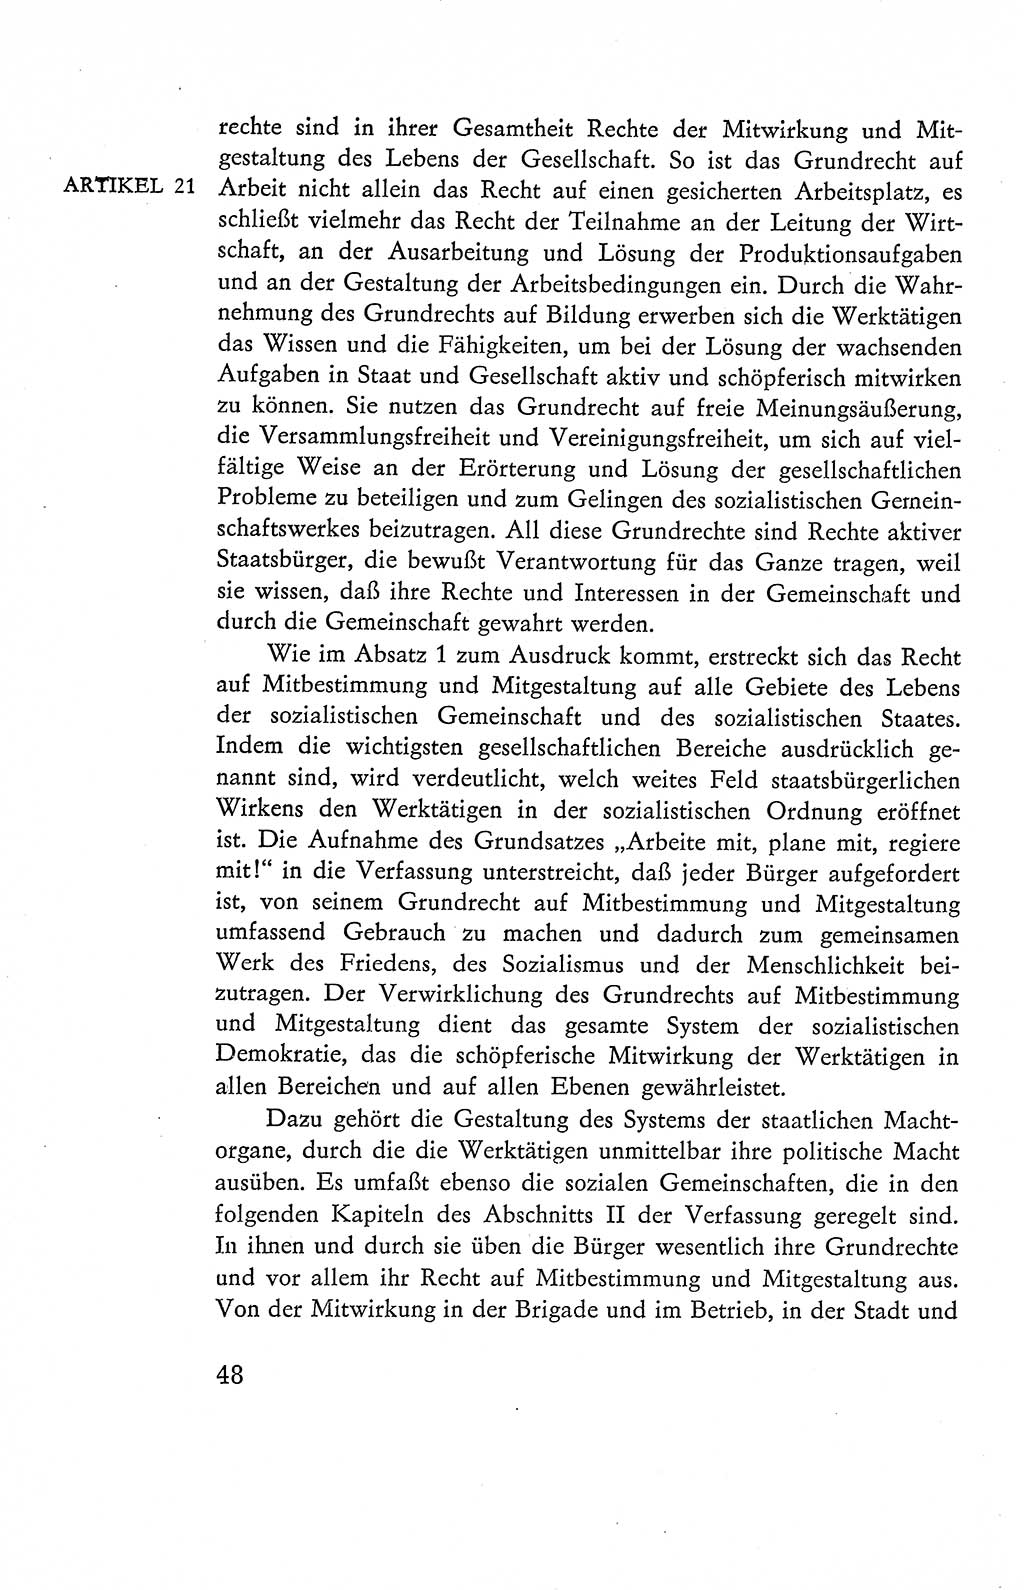 Verfassung der Deutschen Demokratischen Republik (DDR), Dokumente, Kommentar 1969, Band 2, Seite 48 (Verf. DDR Dok. Komm. 1969, Bd. 2, S. 48)